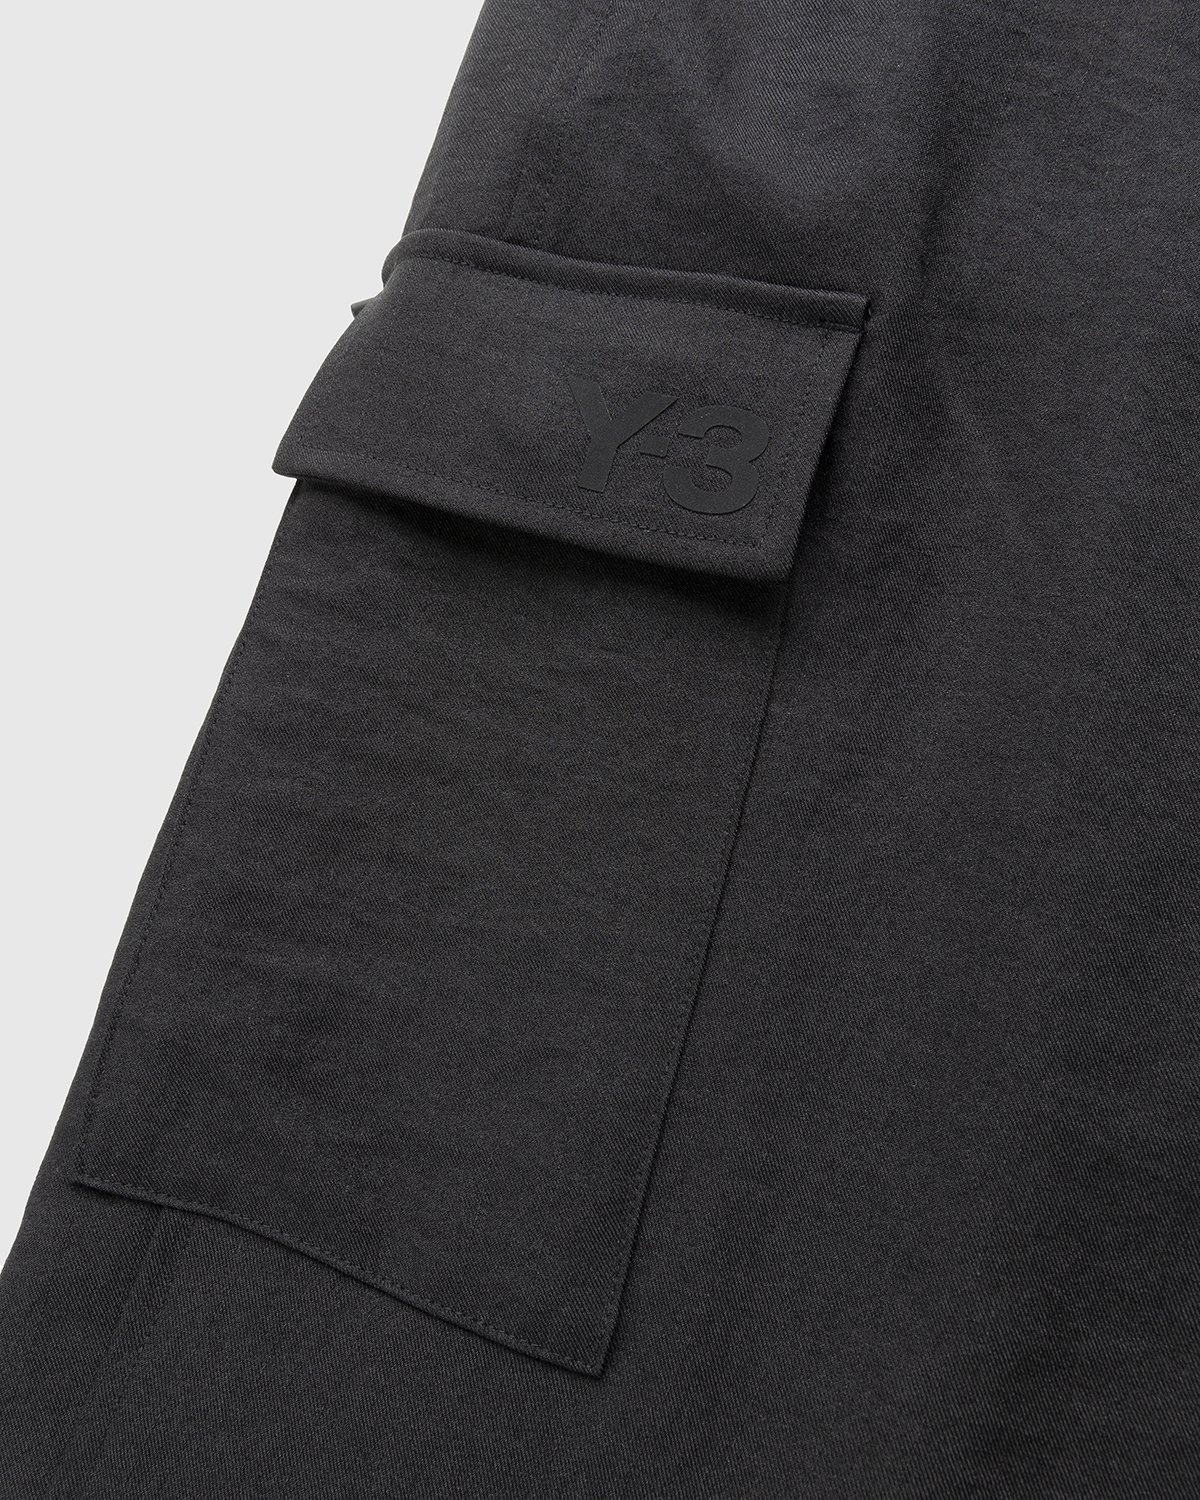 Y-3 – Classic Sport Uniform Cargo Pants Black - Cargo Pants - Black - Image 5